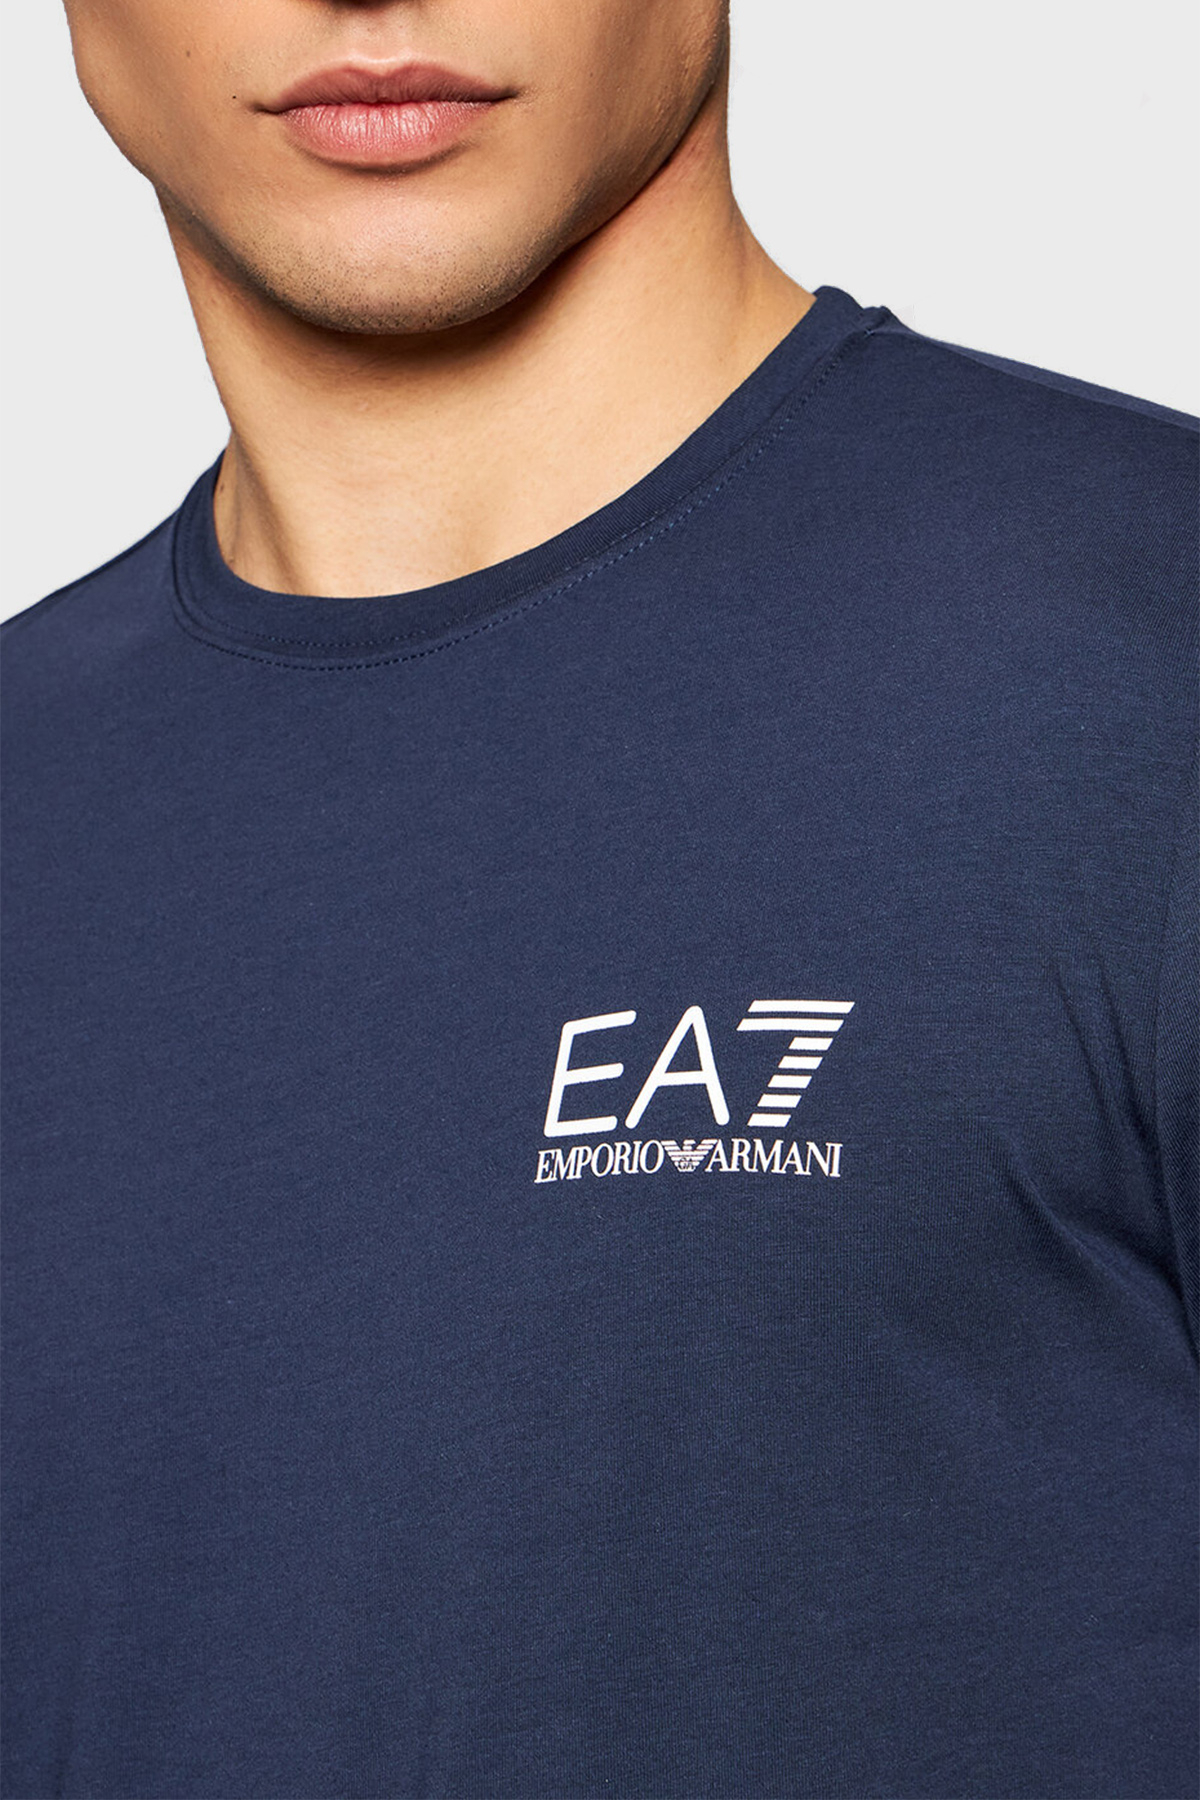 EA7 Logo Baskılı Bisiklet Yaka Pamuklu Erkek T Shirt S 3KPT05 PJ03Z 1554 LACİVERT